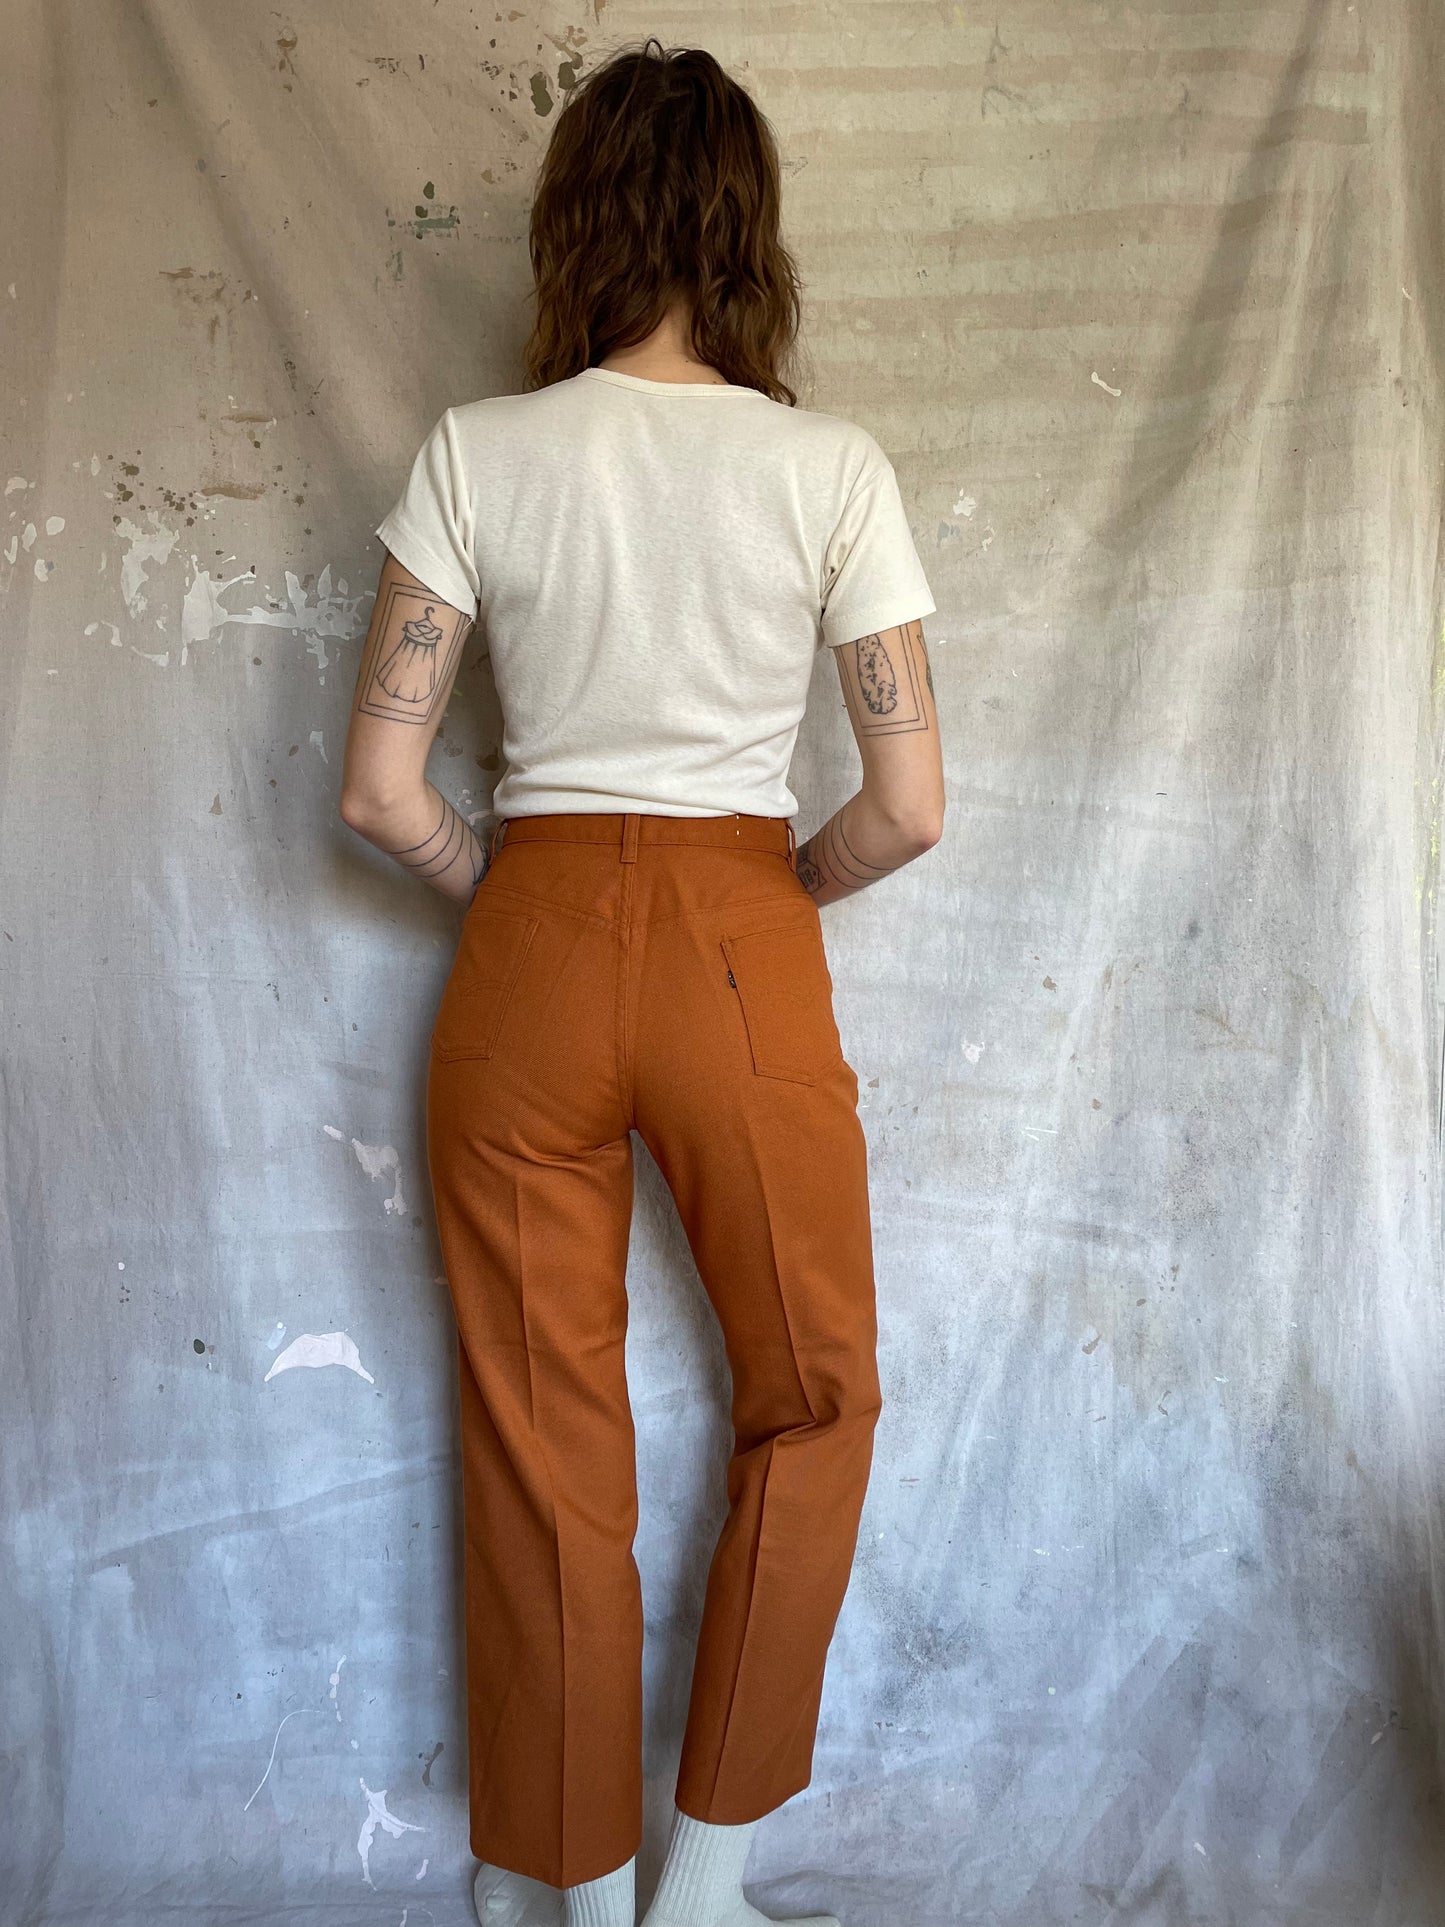 70s Big E Levi’s Rust Pants